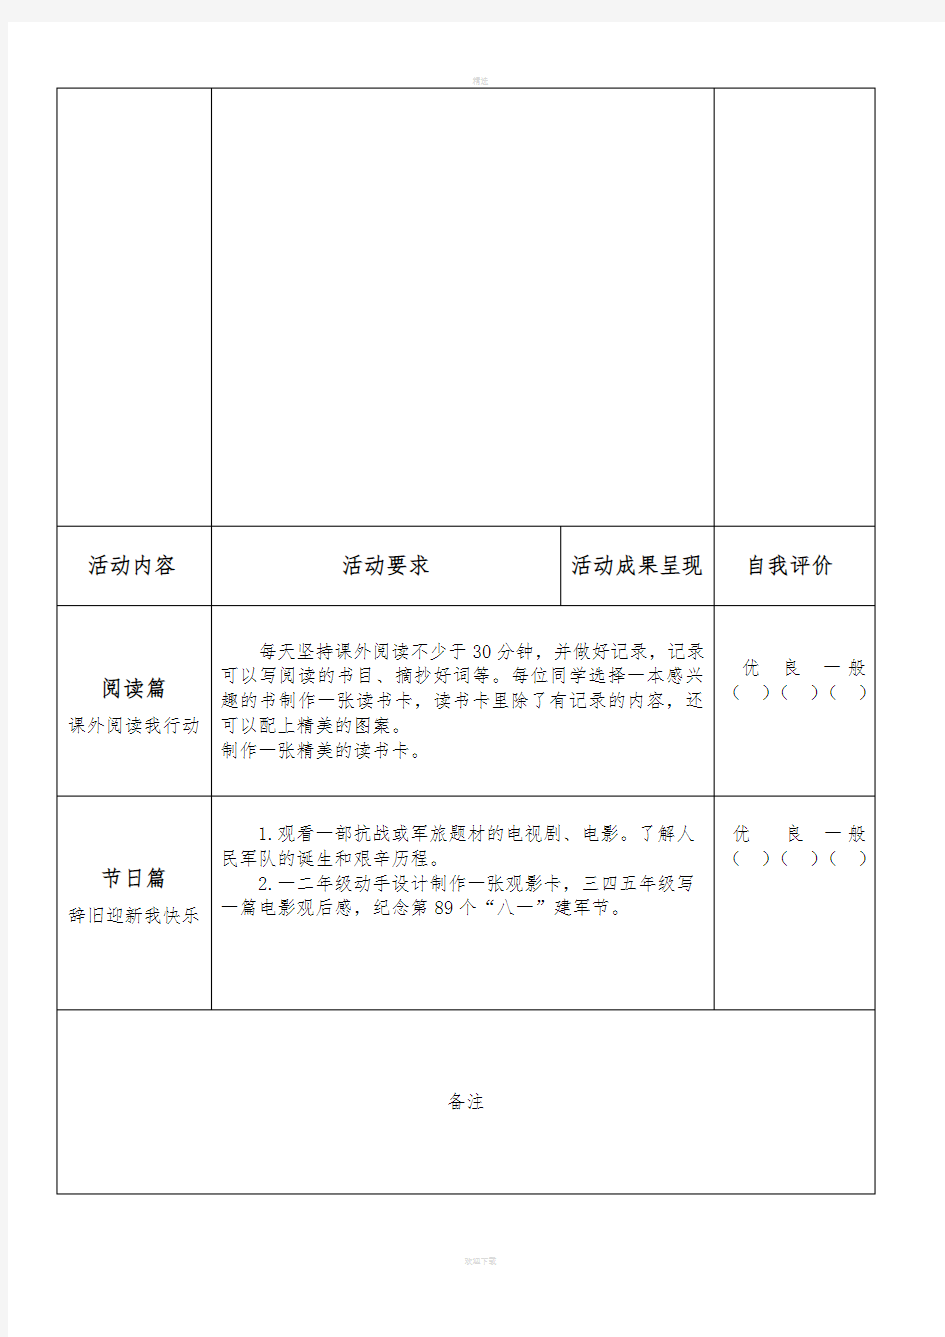 小学生暑假综合实践作业(打印版)